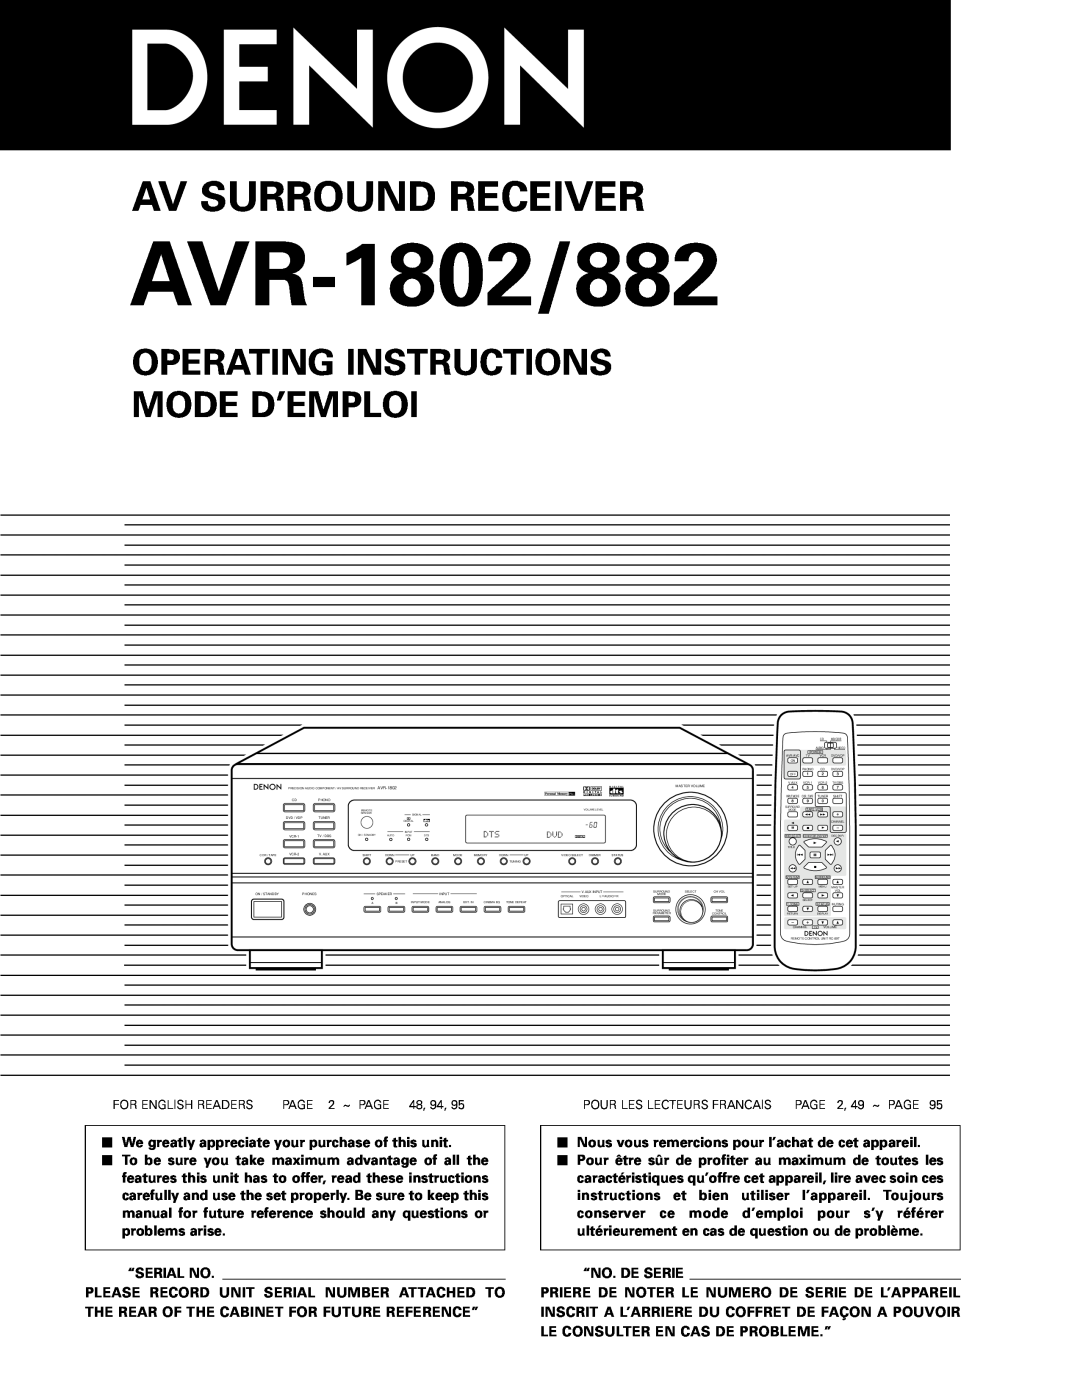 Denon AVR-1802/882 manual Operating Instructions Mode D’Emploi, Av Surround Receiver, “Serial No, “No. De Serie 